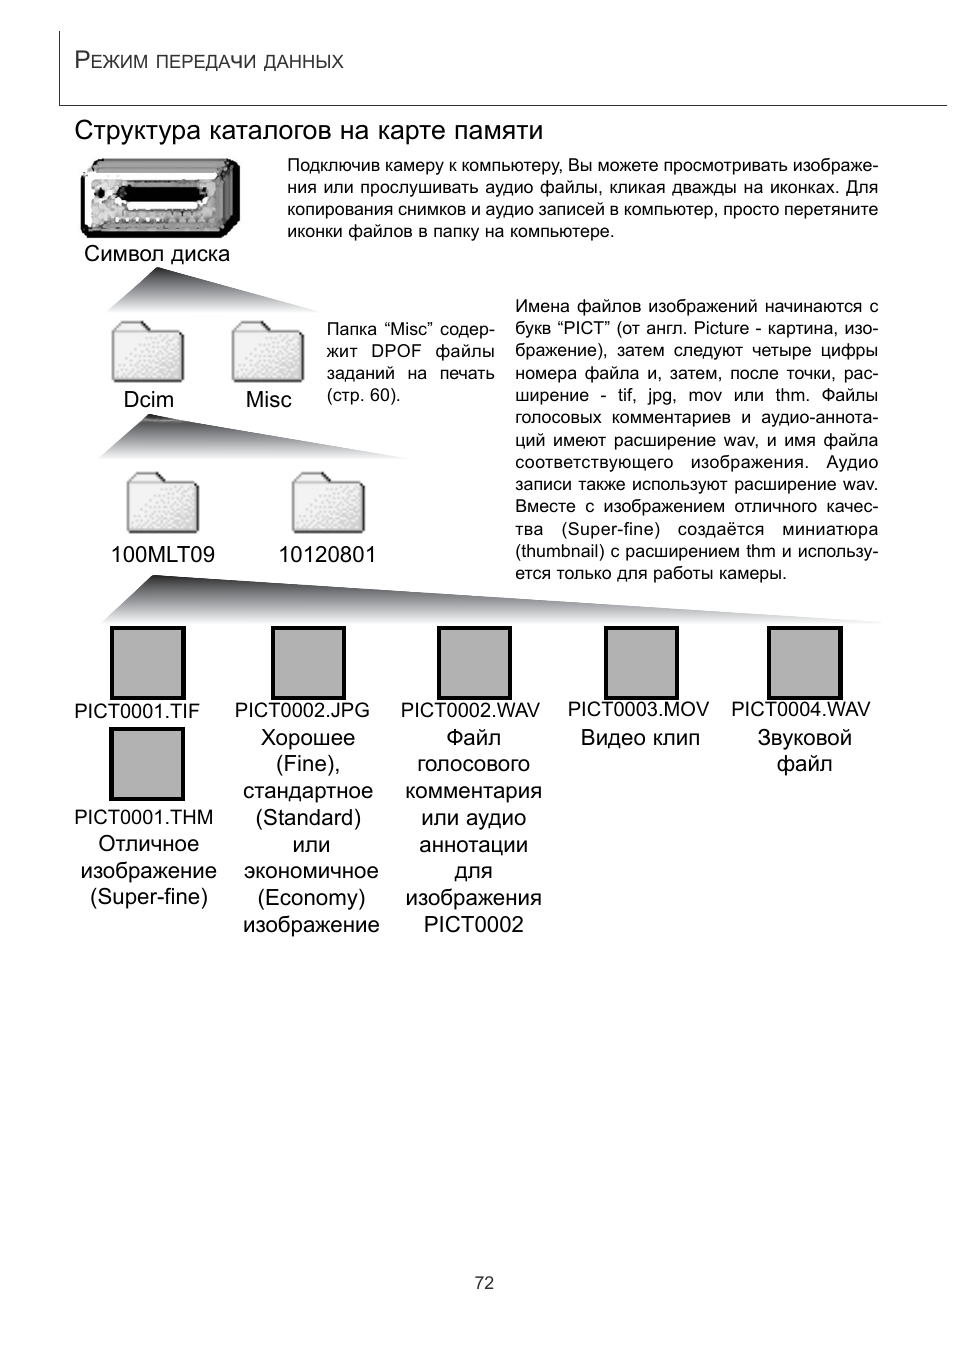 Память инструкций. Структура каталогов Windows. THM Формат.